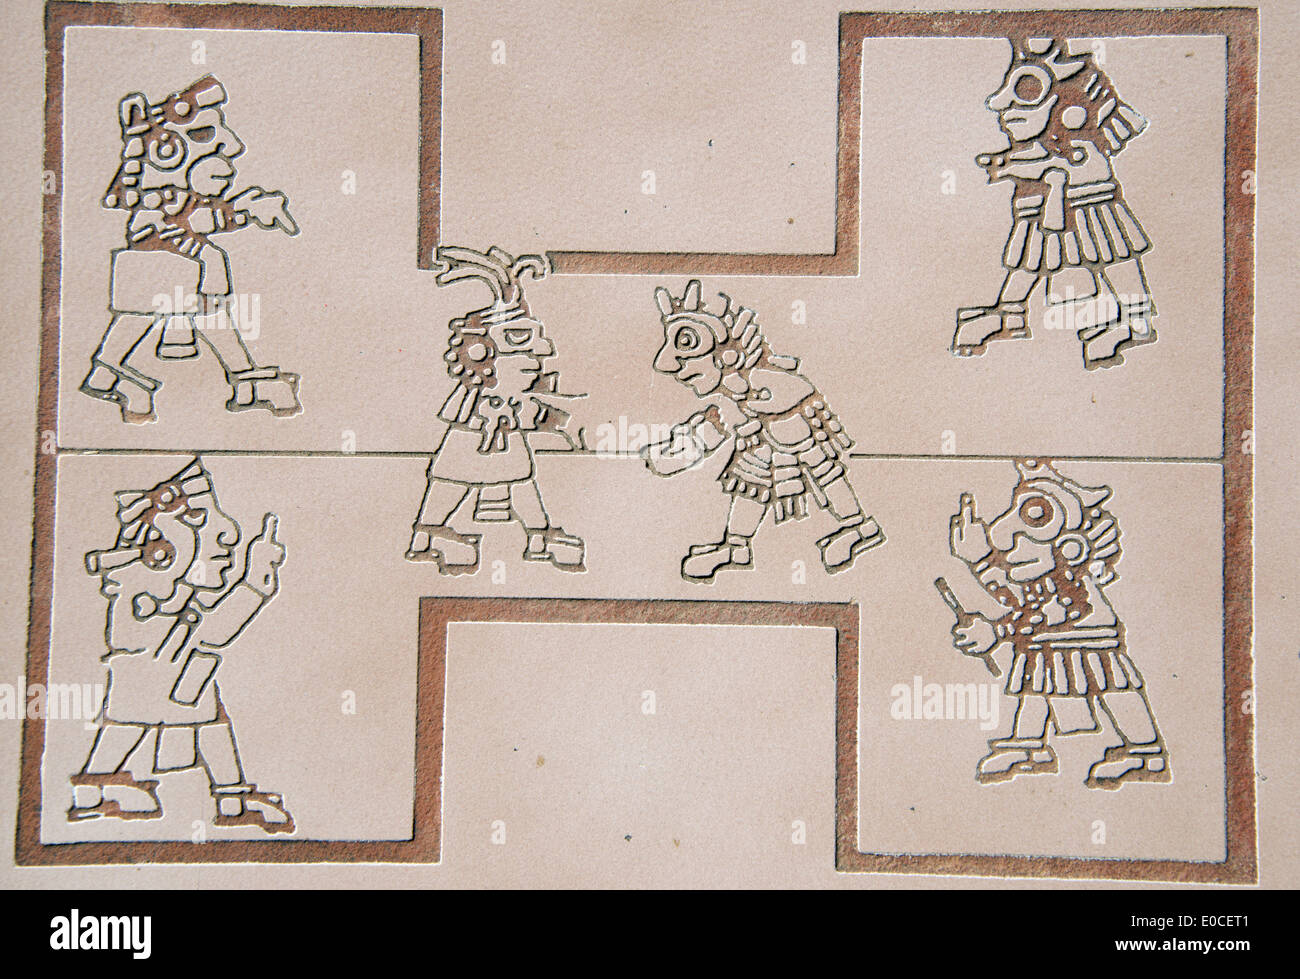 Impresión del Artista jugando pelota civilización zapoteca de Monte Albán museo Provincia Oaxaca México Foto de stock